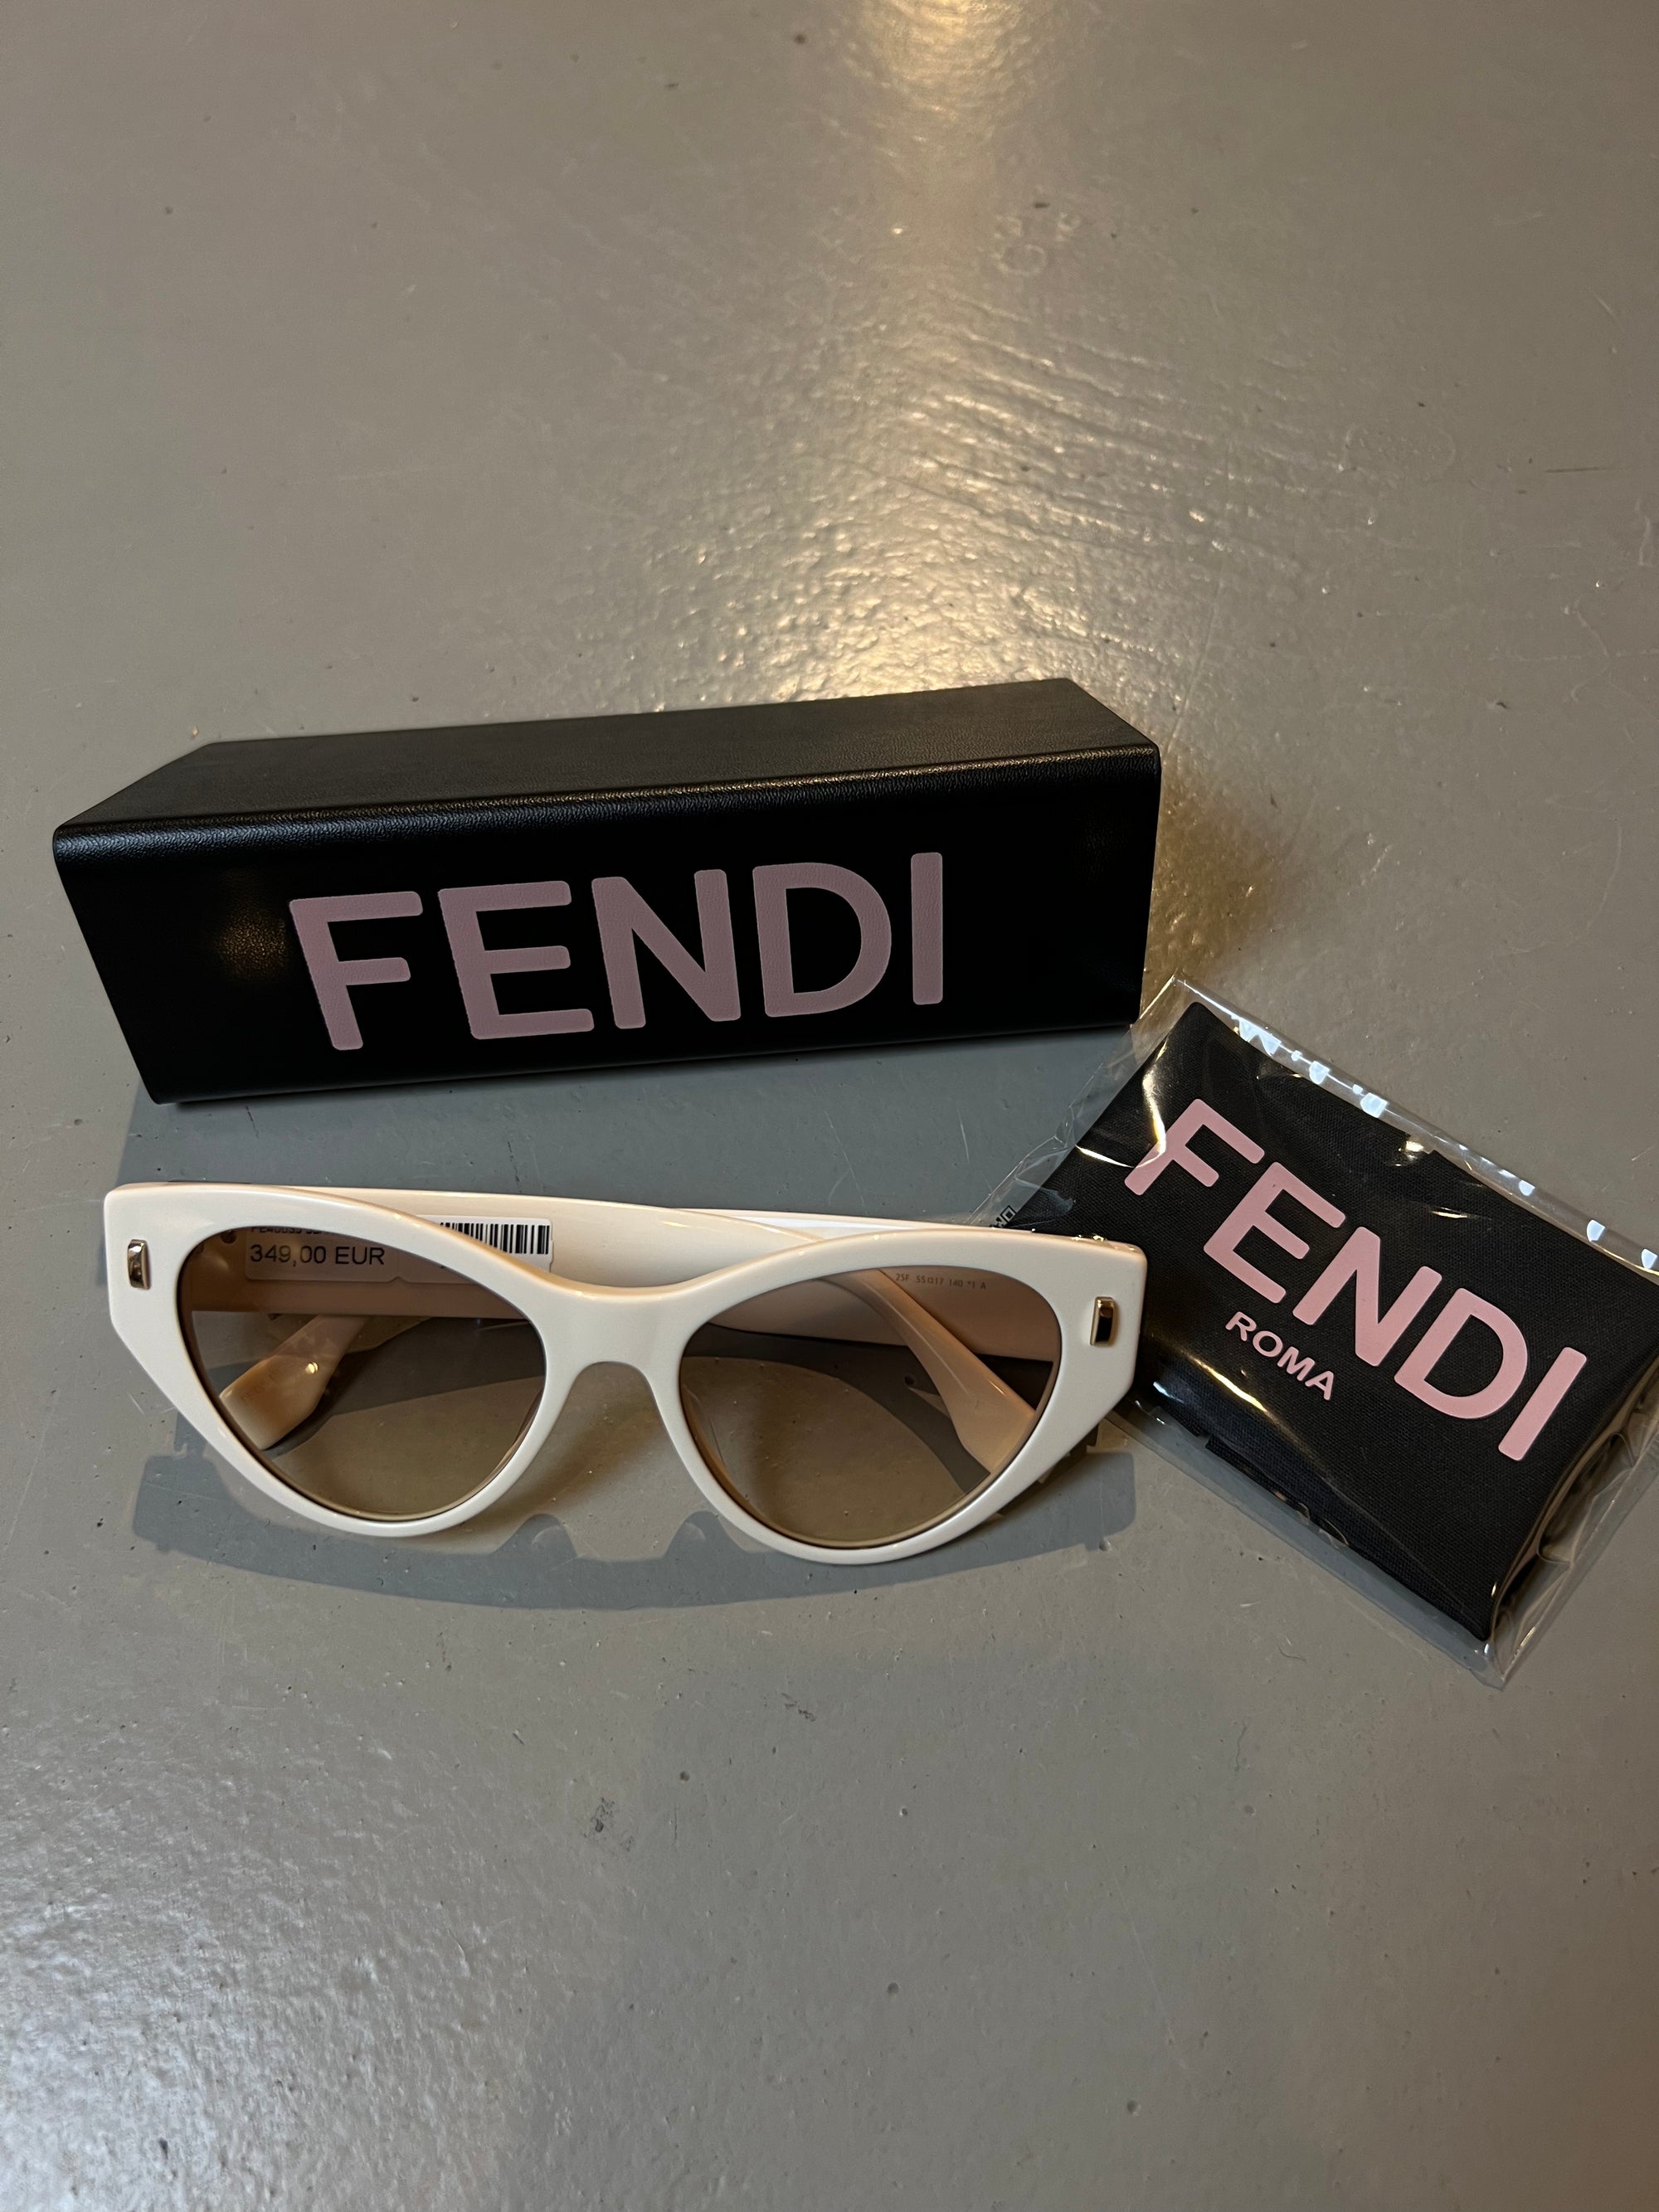 Produktbild der Fendi Beige Cateye Sunglasses von vorne mit Case vor grauem Hintergrund.